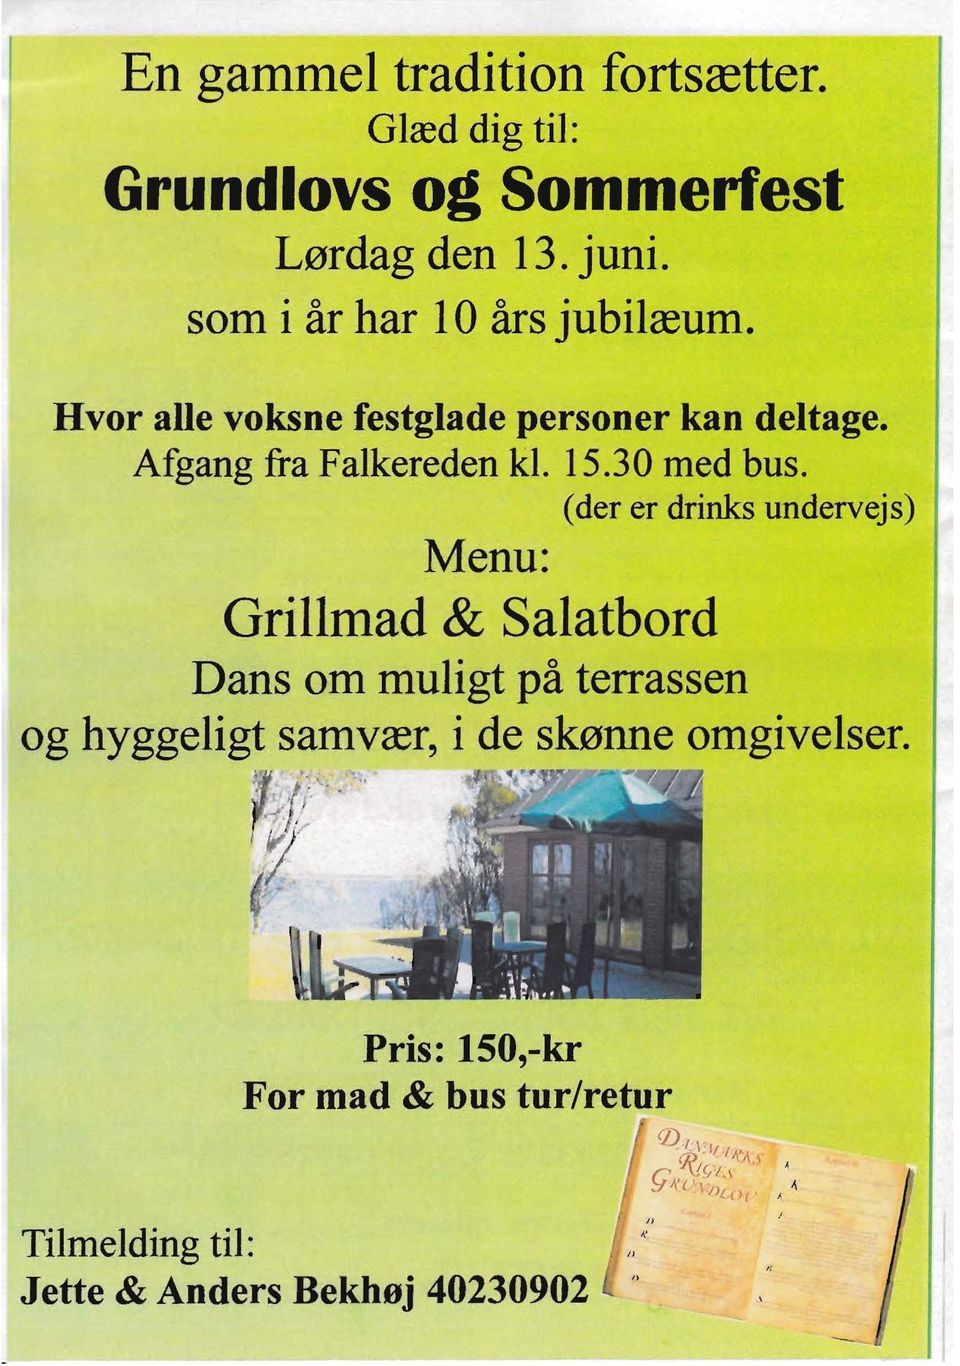 (der er drinks undervejs) Menu: Grillmad & Salatbord Dans om muligt på terrassen og hyggeligt samvær, i de skønne